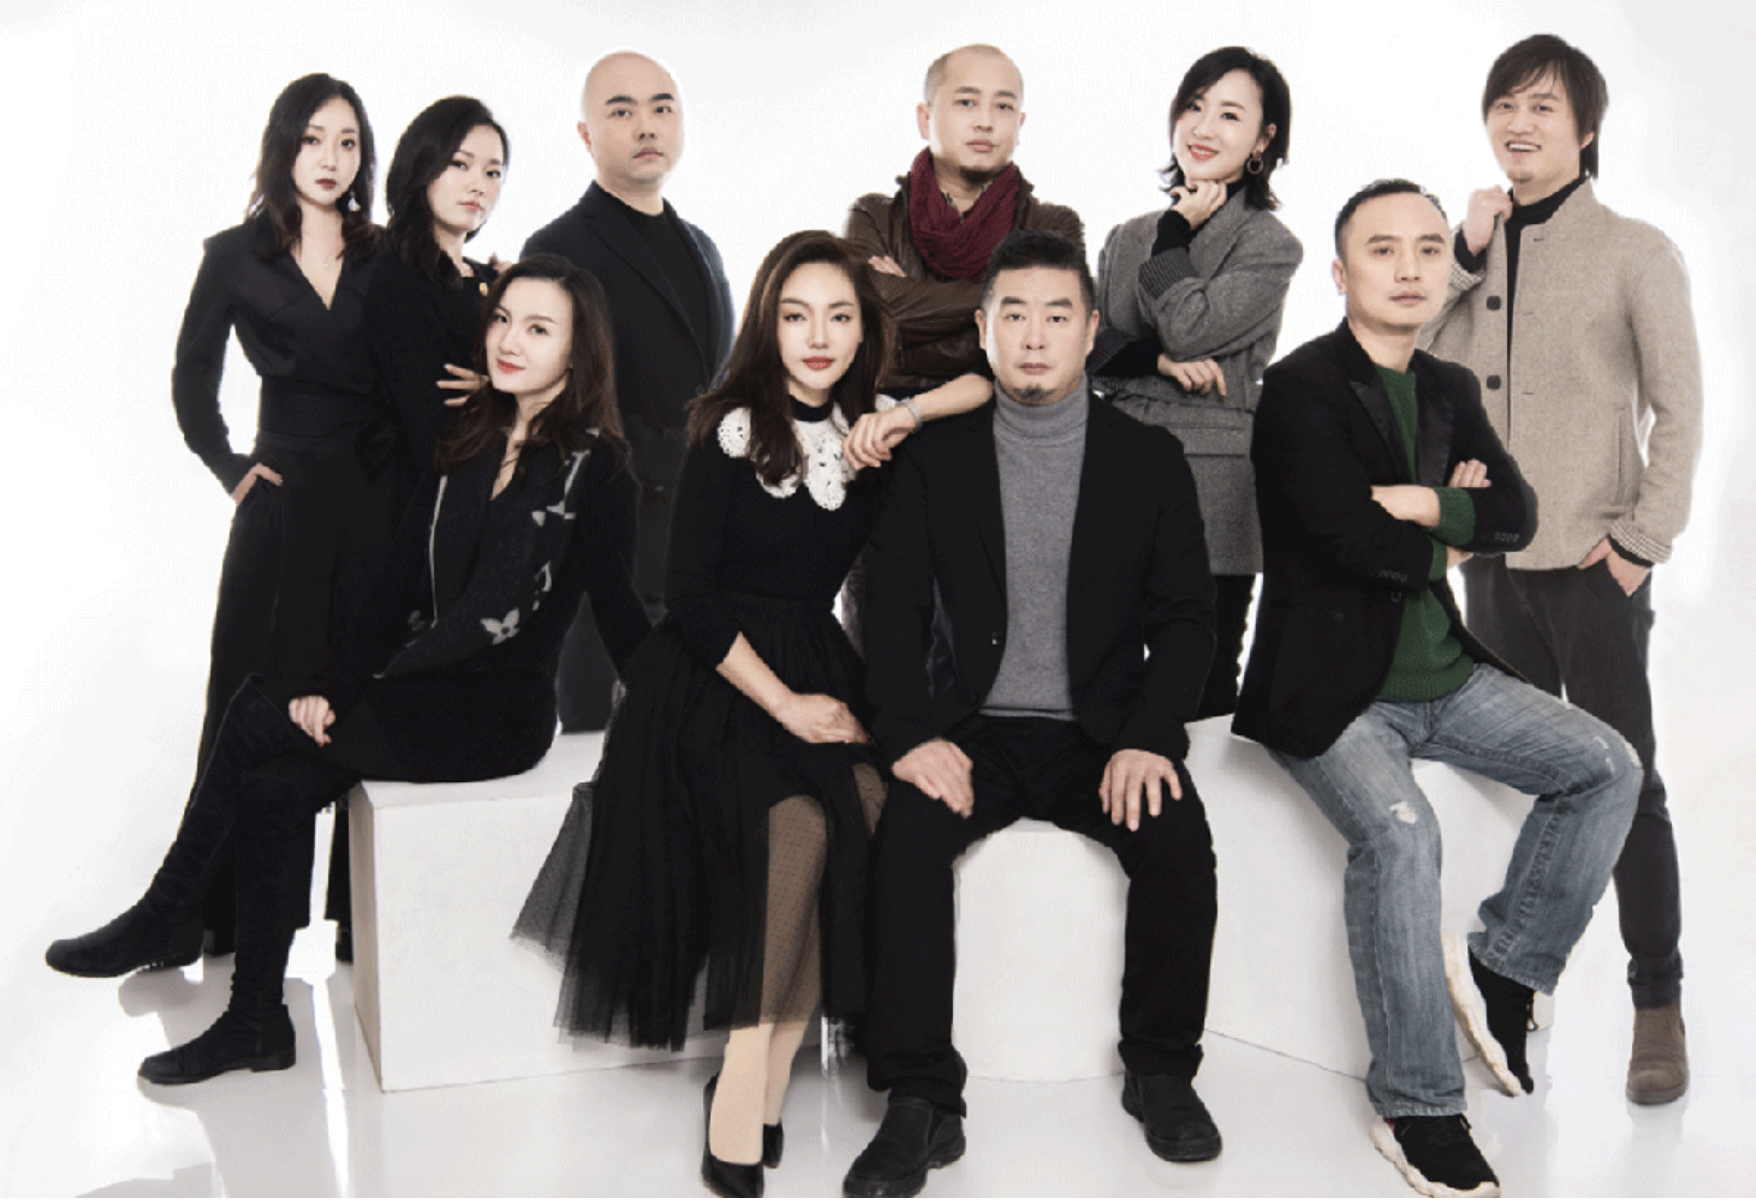 Yifei Pang | MUSE Design Awards